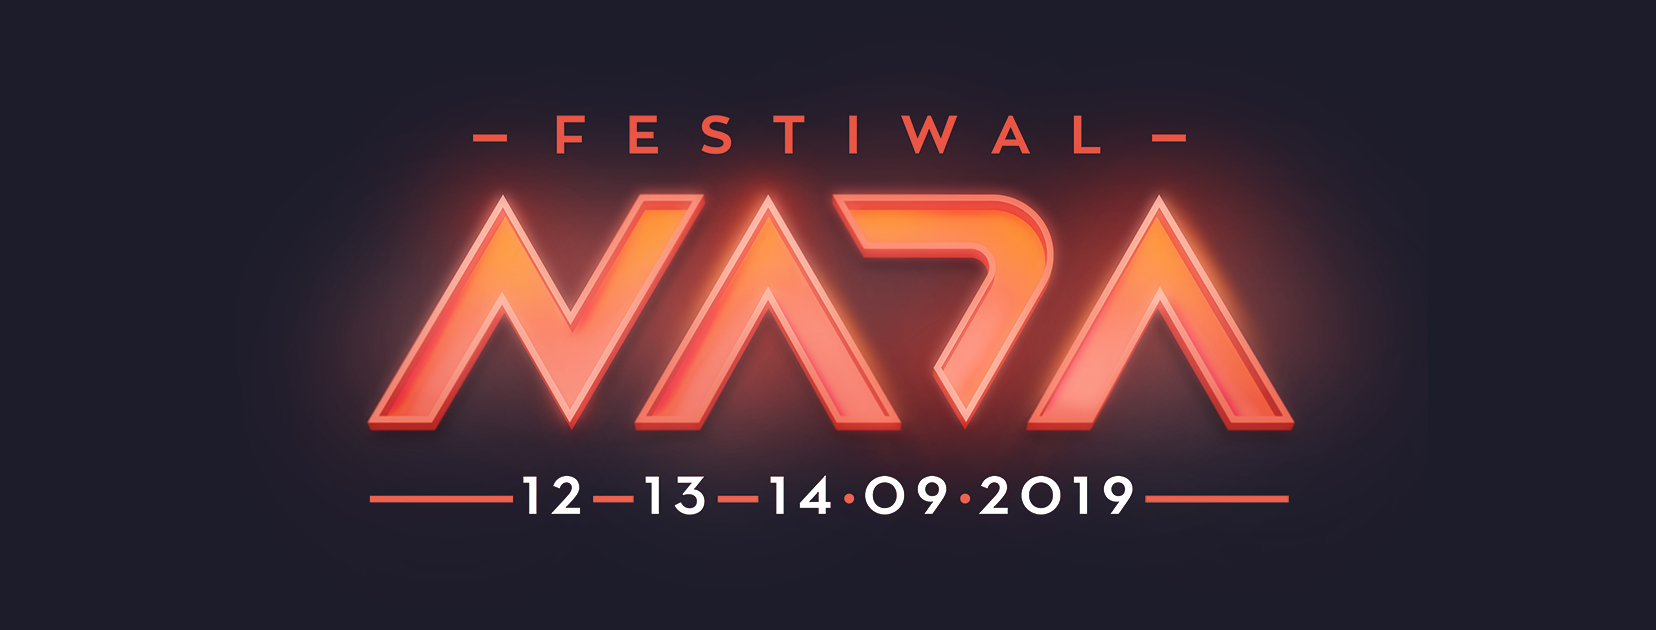 festiwal nada 2019